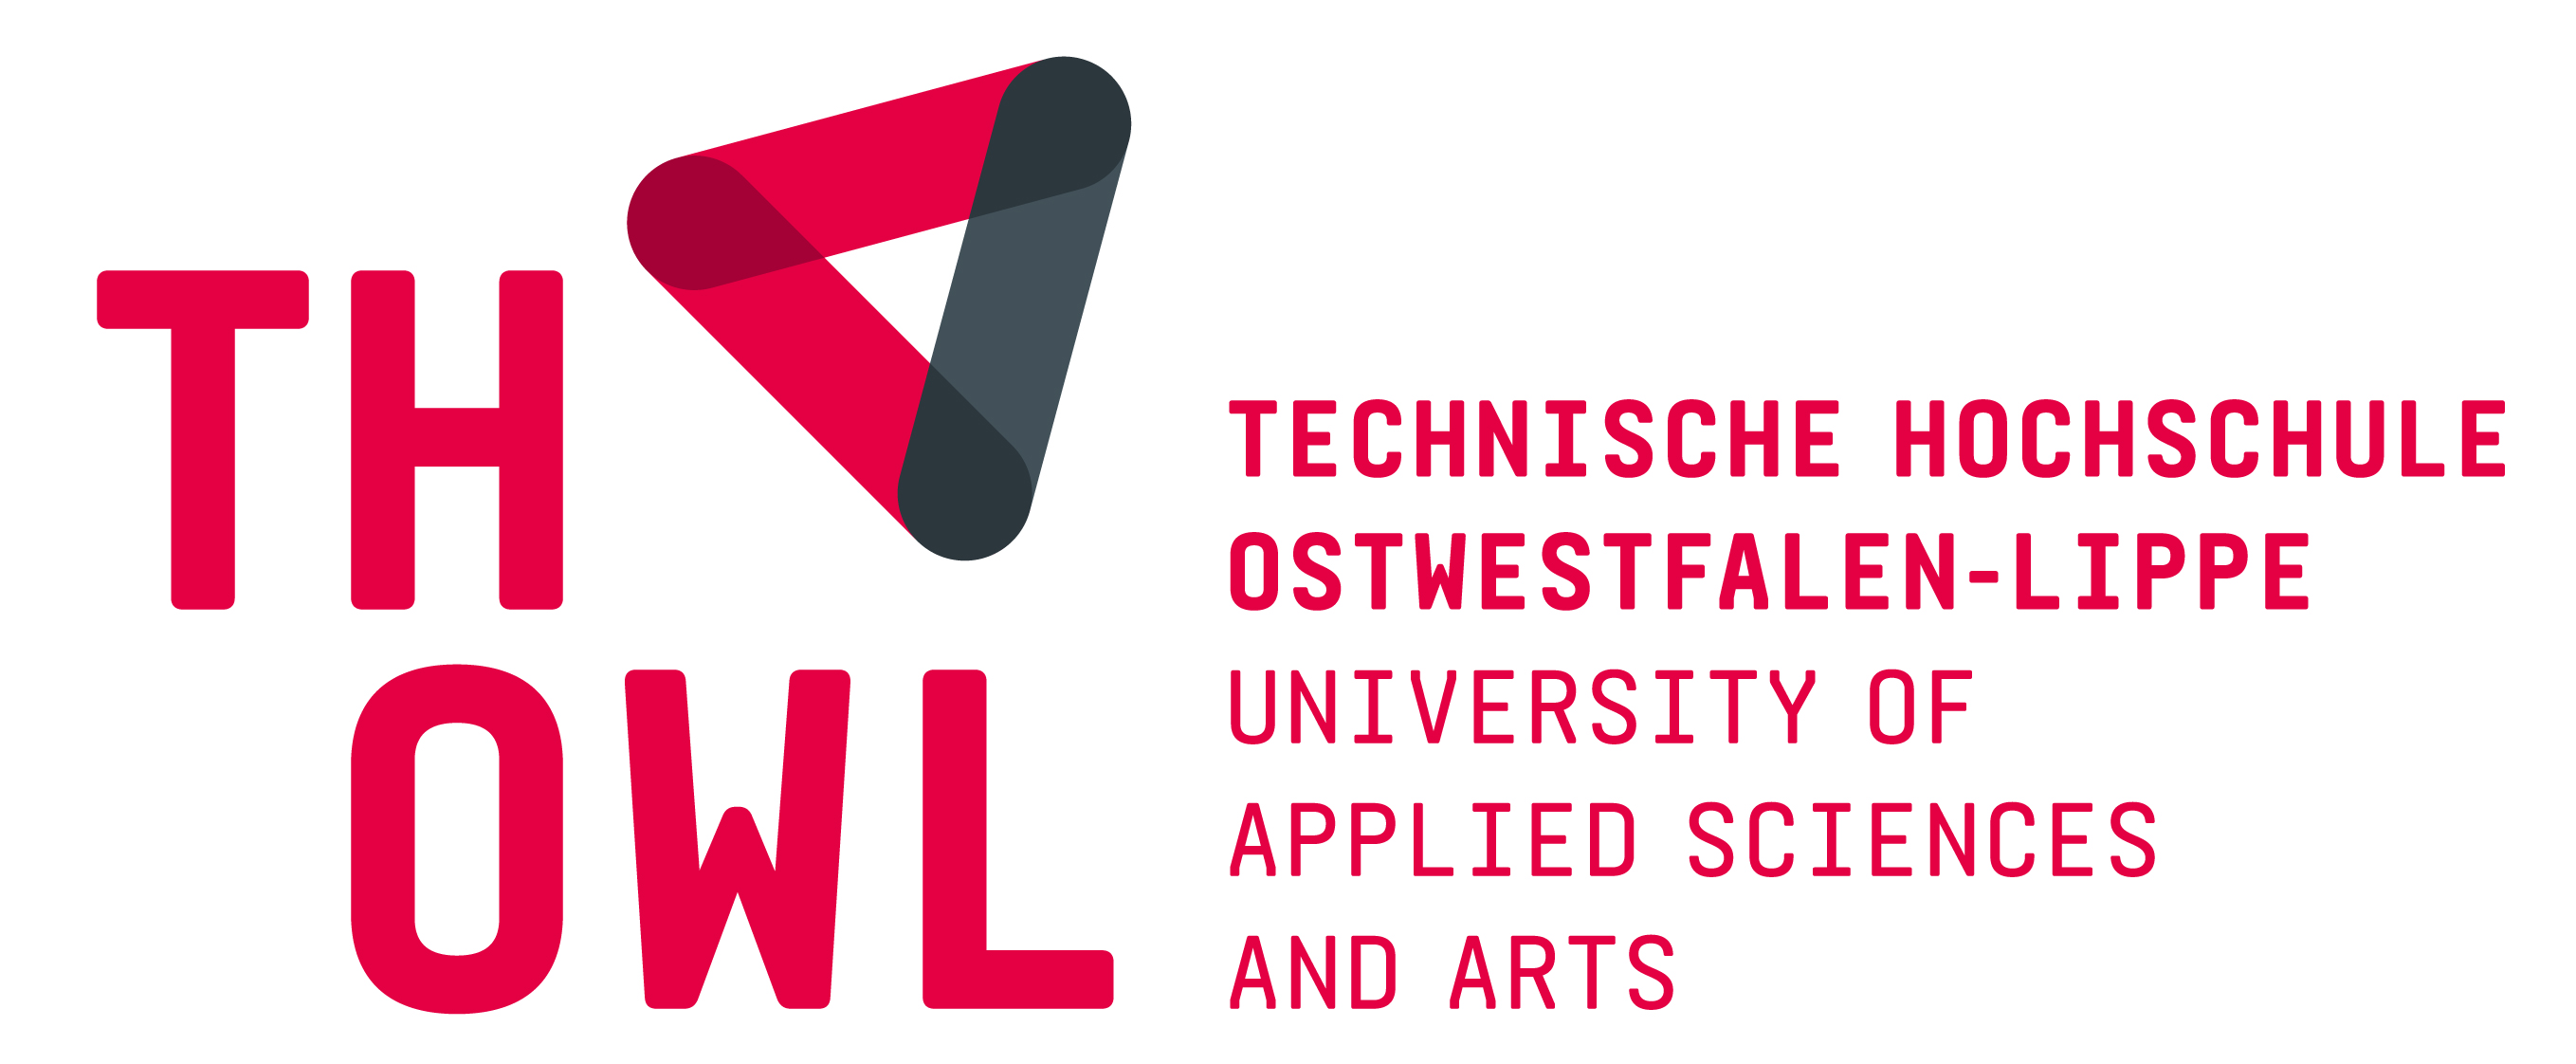 Technische Hochschule Ostwestfalen-Lippe Logo